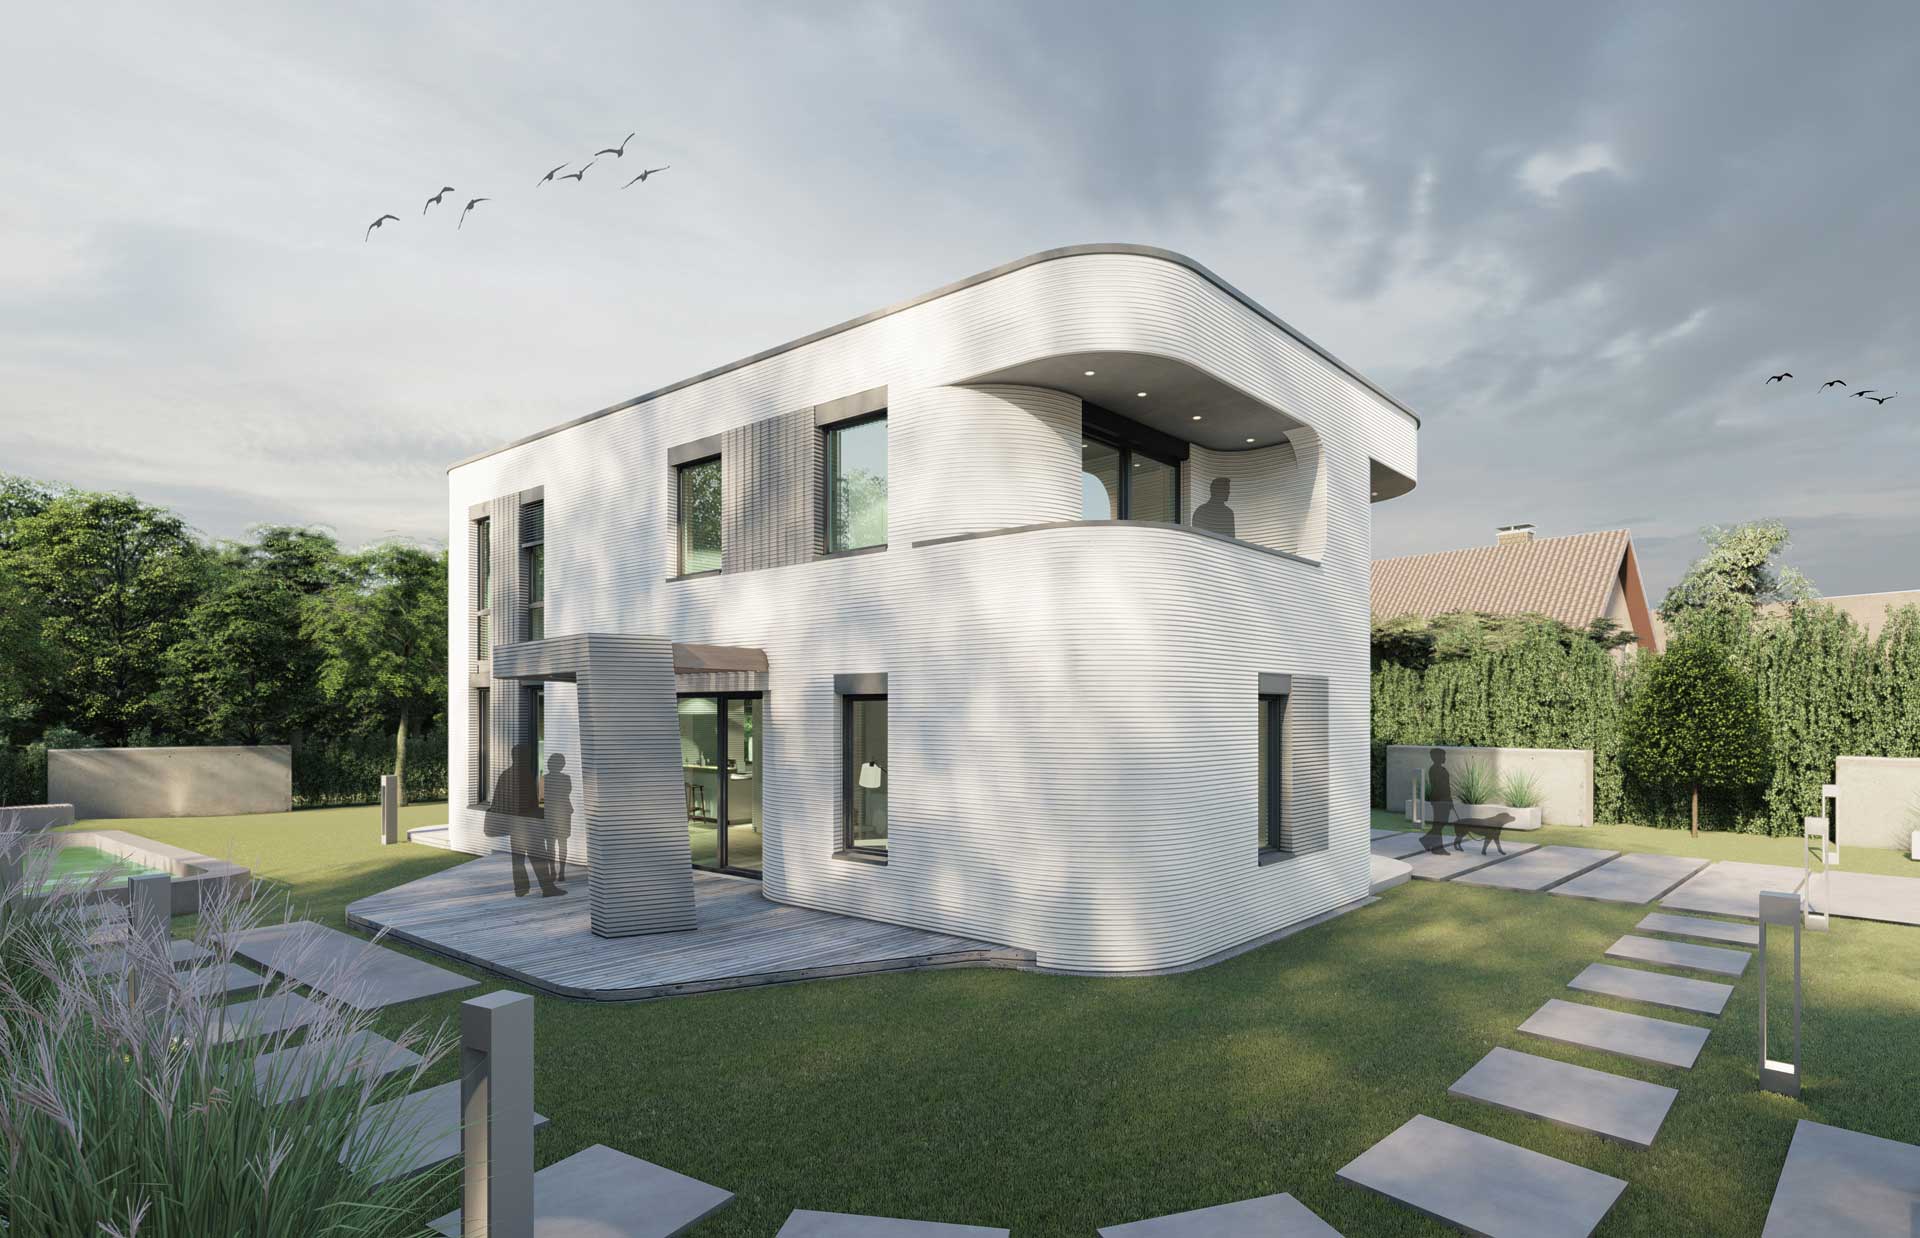 Modernes zweistöckiges Haus mit geschwungenem Design und weißen Wänden, vor einer grünen Rasenfläche und blauem Himmel